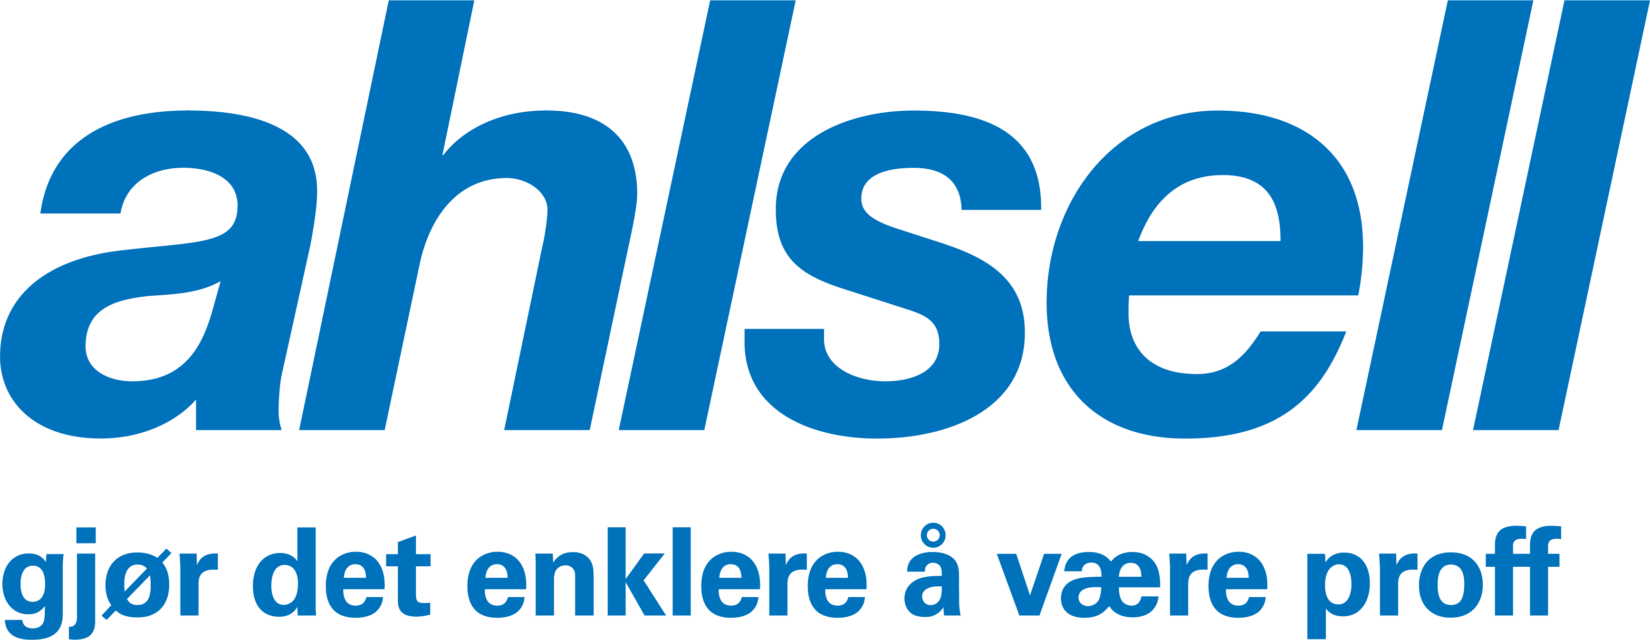 Logo til Ahlsell